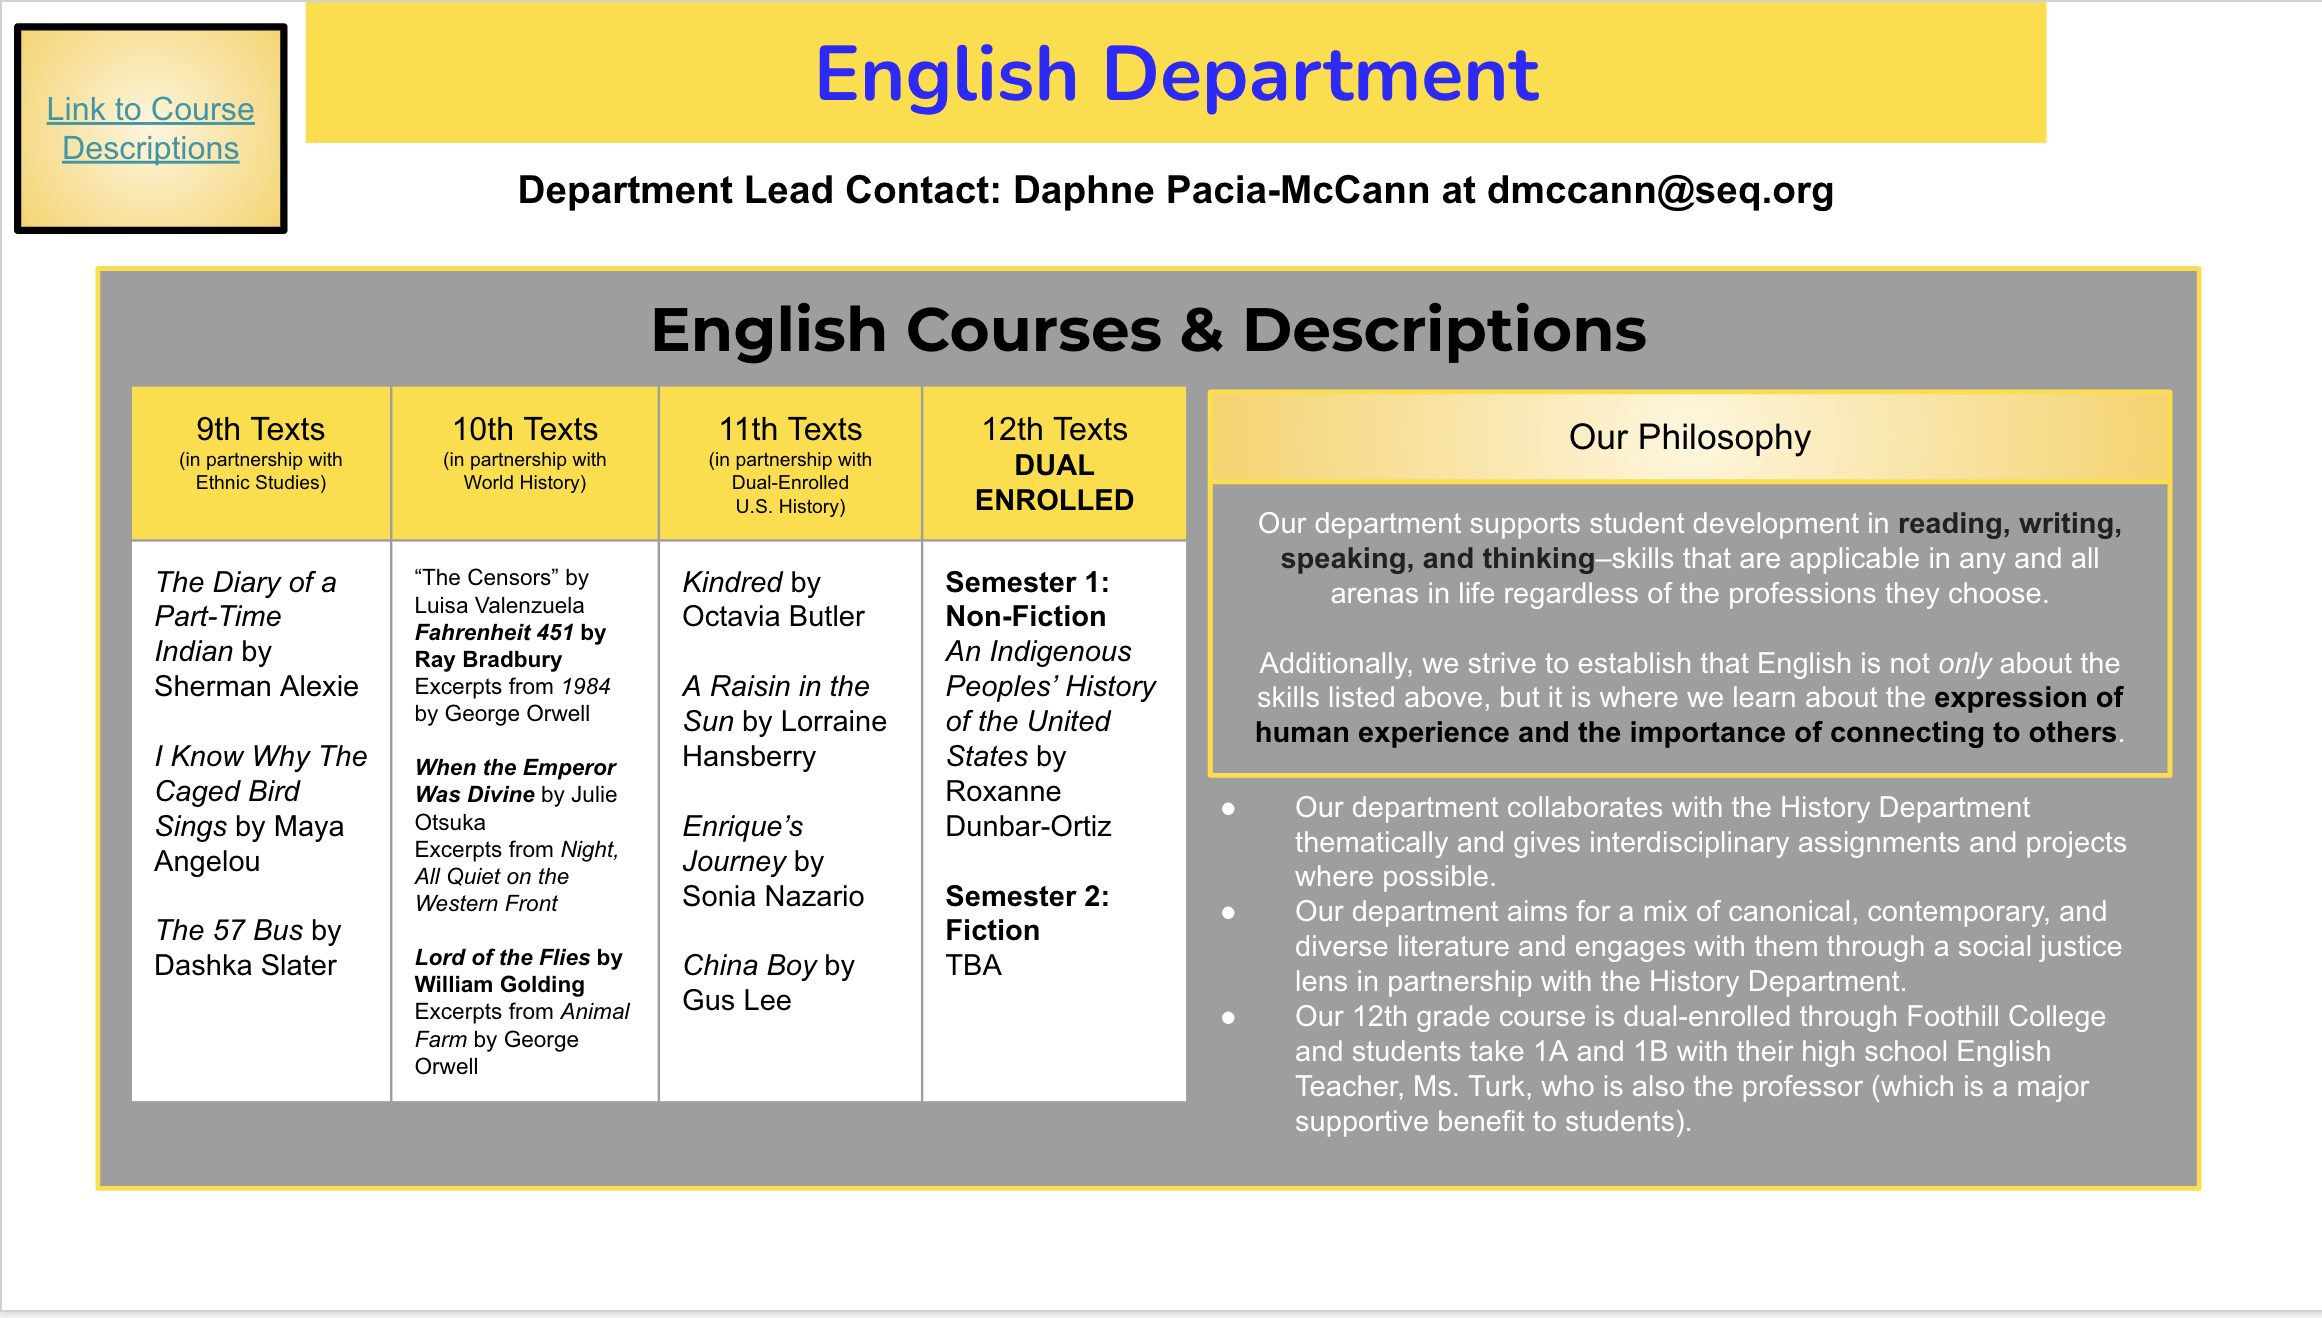 English Department Slides